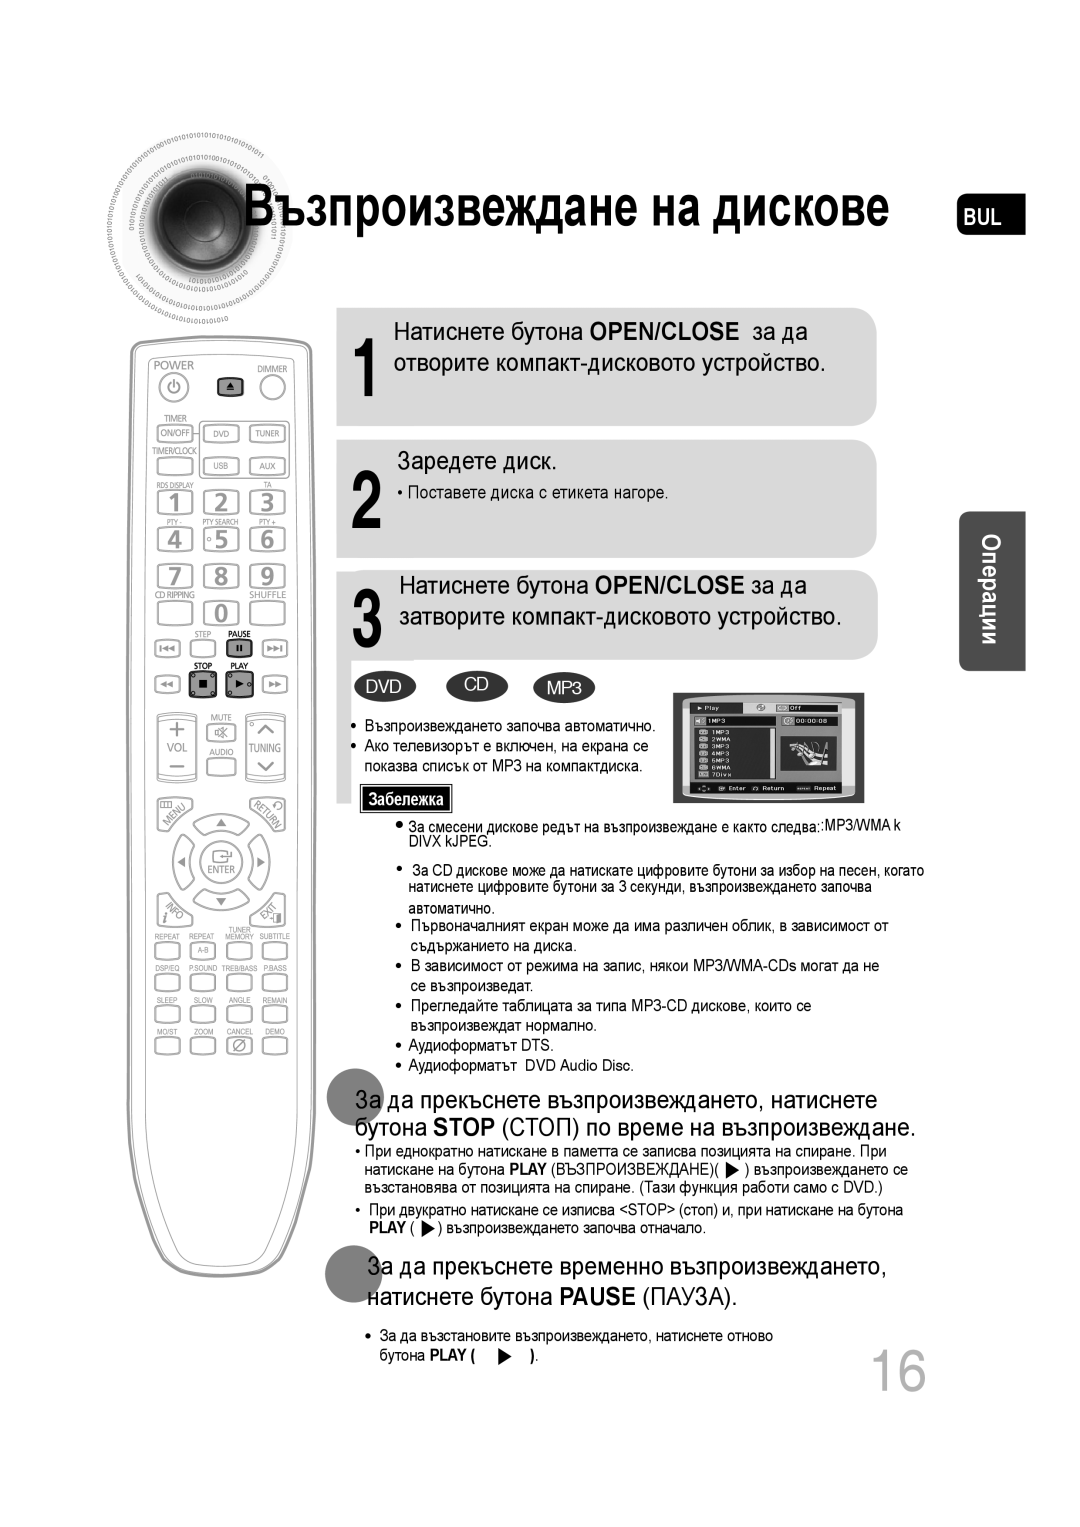 Samsung MM-C330D/EDC manual Натиснете бутона OPEN/CLOSE за да, 1 отворите компакт-дисковото устройство, Заредете диск 